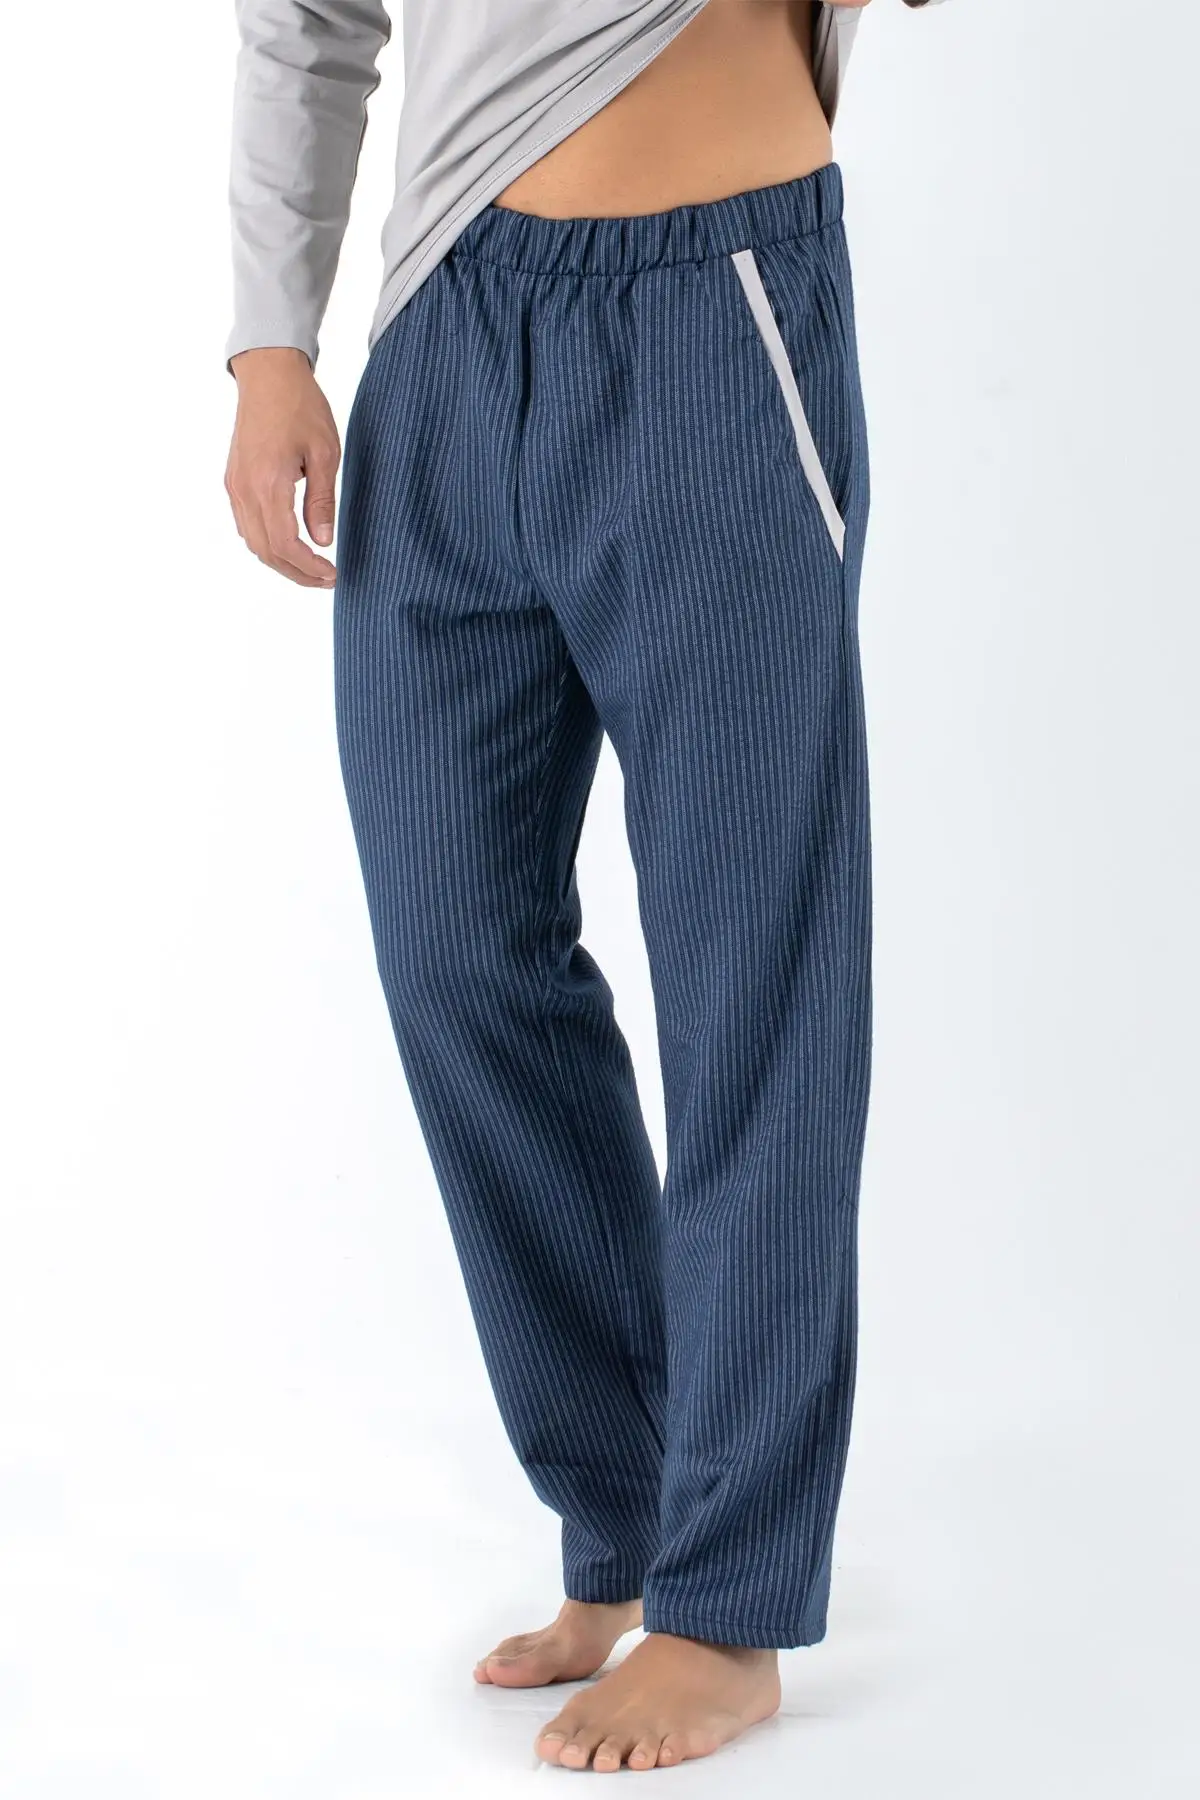 Комплект мужской одежды для сна из 2 предметов, ночные рубашки, пижамы, рубашки, верх и брюки, ночная одежда, пижамы от AliExpress RU&CIS NEW